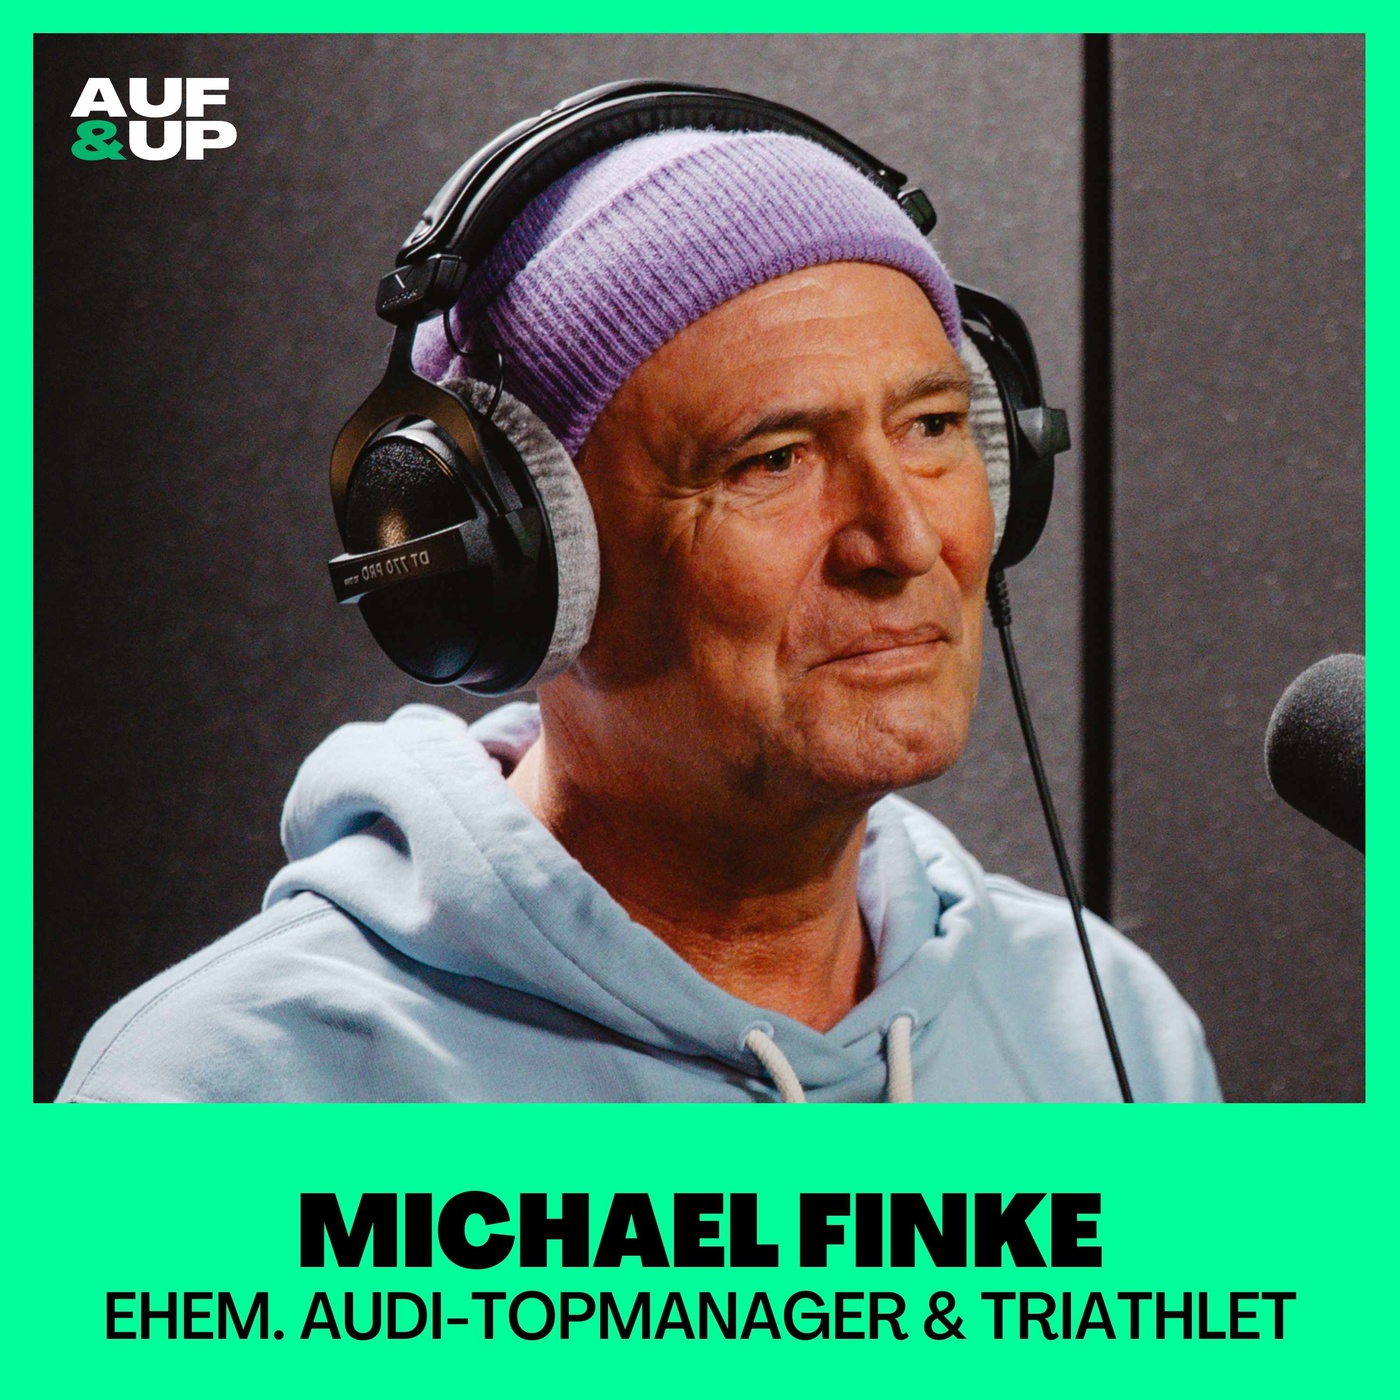 Herzstillstand, Koma, klinisch tot. 9 Monate später Ironman-WM: ehem. Audi-Topmanager Michael Finke | A&U #045